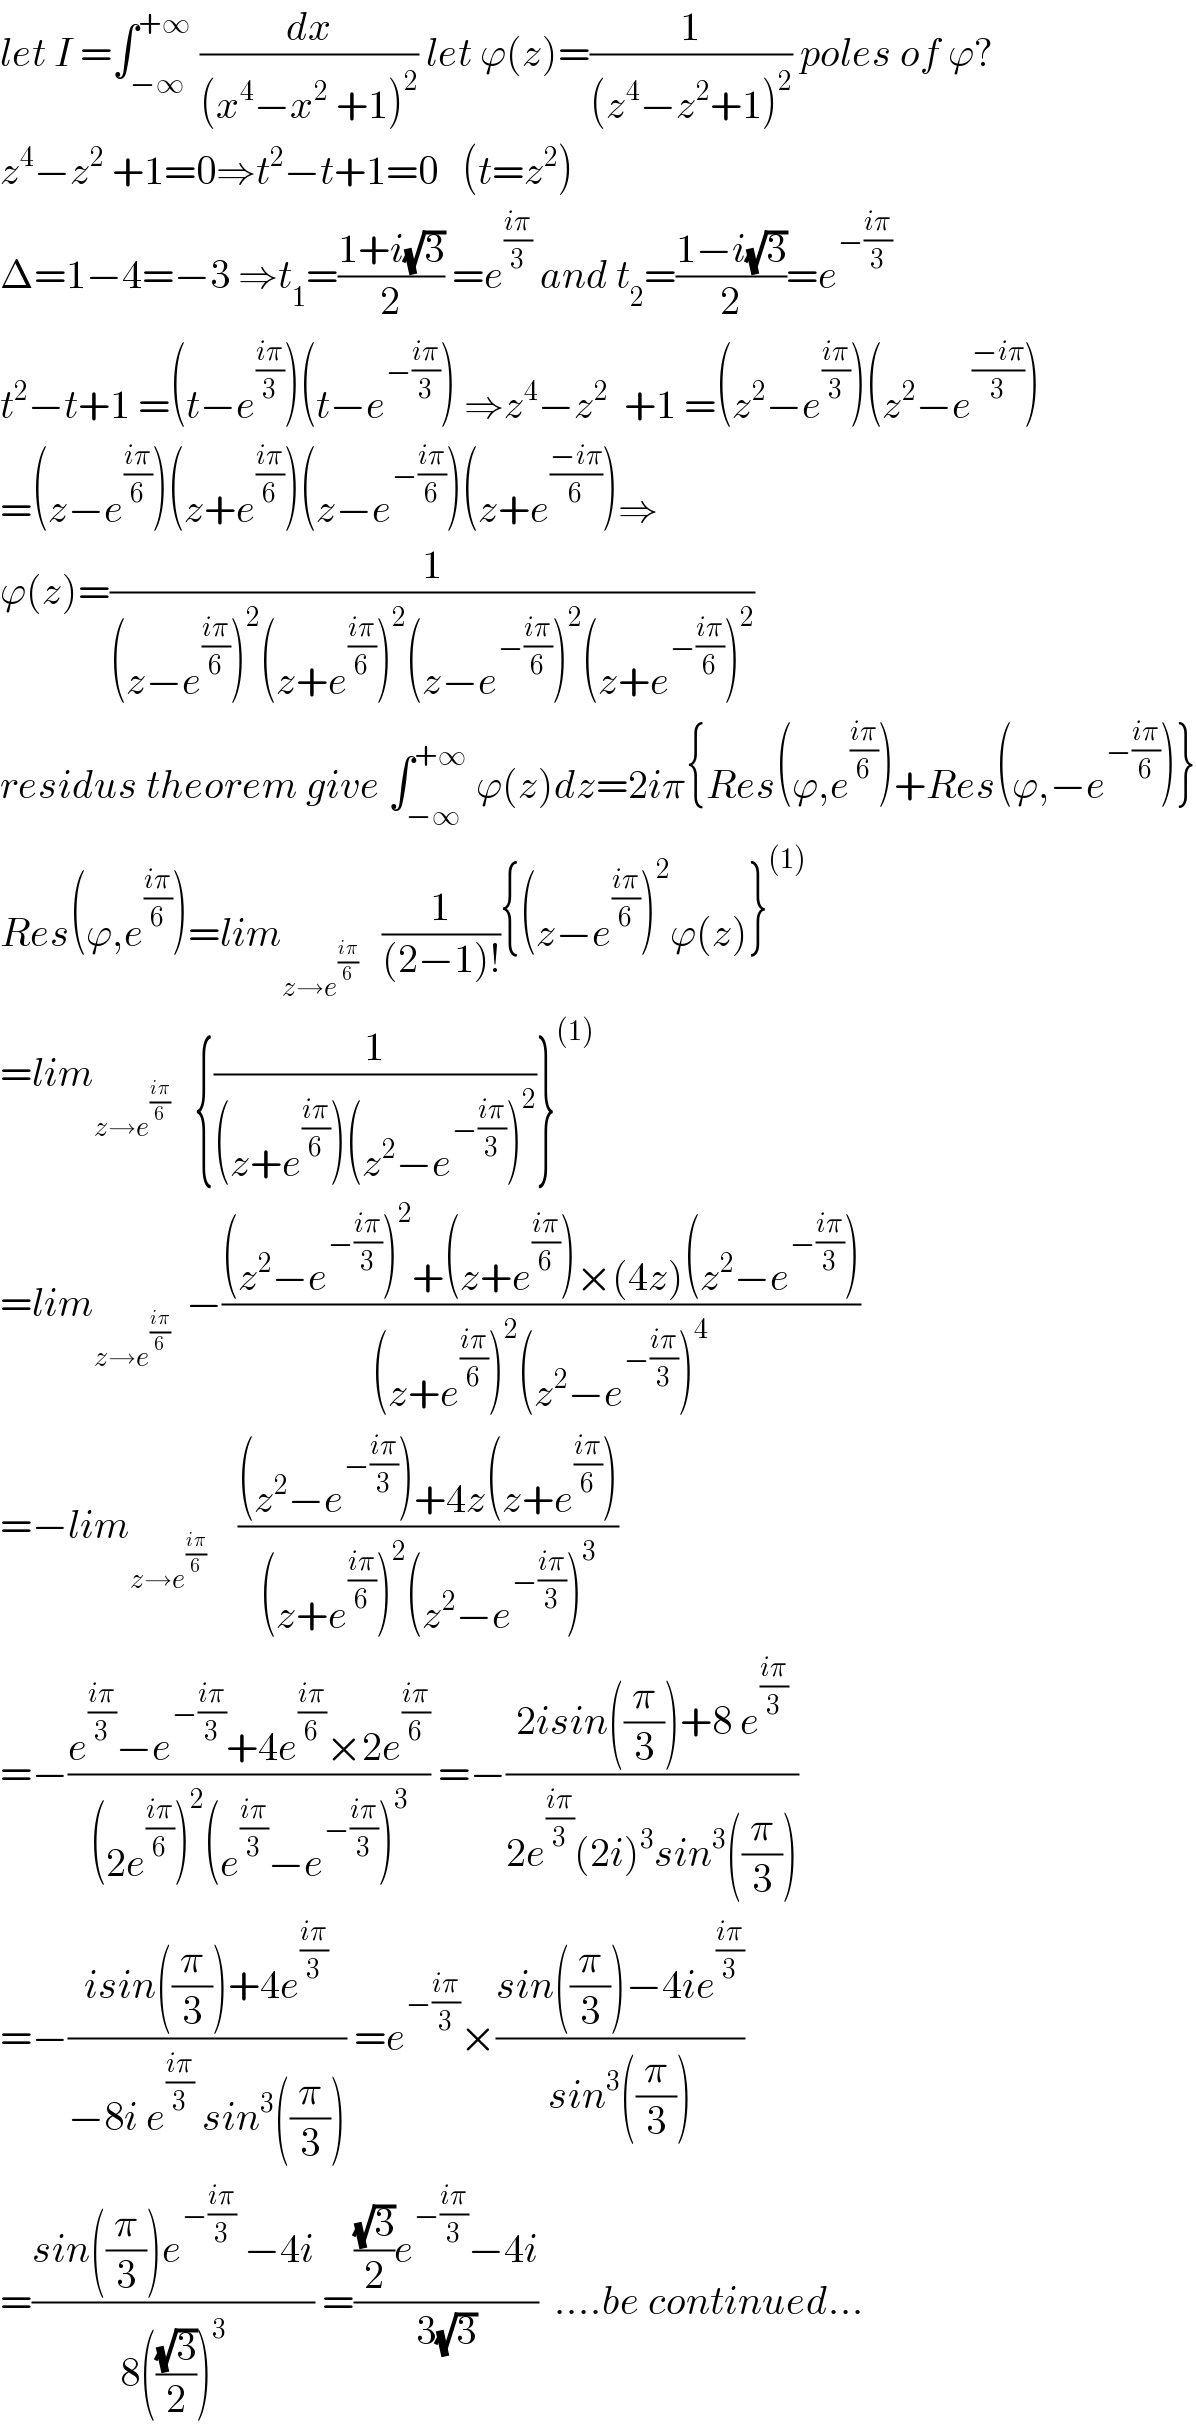 let I =∫_(−∞) ^(+∞)  (dx/((x^4 −x^2  +1)^2 )) let ϕ(z)=(1/((z^4 −z^2 +1)^2 )) poles of ϕ?  z^4 −z^2  +1=0⇒t^2 −t+1=0   (t=z^2 )  Δ=1−4=−3 ⇒t_1 =((1+i(√3))/2) =e^((iπ)/3)  and t_2 =((1−i(√3))/2)=e^(−((iπ)/3))   t^2 −t+1 =(t−e^((iπ)/3) )(t−e^(−((iπ)/3)) ) ⇒z^4 −z^2   +1 =(z^2 −e^((iπ)/3) )(z^2 −e^((−iπ)/3) )  =(z−e^((iπ)/6) )(z+e^((iπ)/6) )(z−e^(−((iπ)/6)) )(z+e^((−iπ)/6) )⇒  ϕ(z)=(1/((z−e^((iπ)/6) )^2 (z+e^((iπ)/6) )^2 (z−e^(−((iπ)/6)) )^2 (z+e^(−((iπ)/6)) )^2 ))  residus theorem give ∫_(−∞) ^(+∞)  ϕ(z)dz=2iπ{Res(ϕ,e^((iπ)/6) )+Res(ϕ,−e^(−((iπ)/6)) )}  Res(ϕ,e^((iπ)/6) )=lim_(z→e^((iπ)/6) )    (1/((2−1)!)){(z−e^((iπ)/6) )^2 ϕ(z)}^((1))   =lim_(z→e^((iπ)/6) )    {(1/((z+e^((iπ)/6) )(z^2 −e^(−((iπ)/3)) )^2 ))}^((1))   =lim_(z→e^((iπ)/6) )   −(((z^2 −e^(−((iπ)/3)) )^2 +(z+e^((iπ)/6) )×(4z)(z^2 −e^(−((iπ)/3)) ))/((z+e^((iπ)/6) )^2 (z^2 −e^(−((iπ)/3)) )^4 ))  =−lim_(z→e^((iπ)/6) )     (((z^2 −e^(−((iπ)/3)) )+4z(z+e^((iπ)/6) ))/((z+e^((iπ)/6) )^2 (z^2 −e^(−((iπ)/3)) )^3 ))  =−((e^((iπ)/3) −e^(−((iπ)/3)) +4e^((iπ)/6) ×2e^((iπ)/6) )/((2e^((iπ)/6) )^2 (e^((iπ)/3) −e^(−((iπ)/3)) )^3 )) =−((2isin((π/3))+8 e^((iπ)/3) )/(2e^((iπ)/3) (2i)^3 sin^3 ((π/3))))  =−((isin((π/3))+4e^((iπ)/3) )/(−8i e^((iπ)/3)  sin^3 ((π/3)))) =e^(−((iπ)/3)) ×((sin((π/3))−4ie^((iπ)/3) )/(sin^3 ((π/3))))  =((sin((π/3))e^(−((iπ)/3))  −4i)/(8(((√3)/2))^3 )) =((((√3)/2)e^(−((iπ)/3)) −4i)/(3(√3)))  ....be continued...  